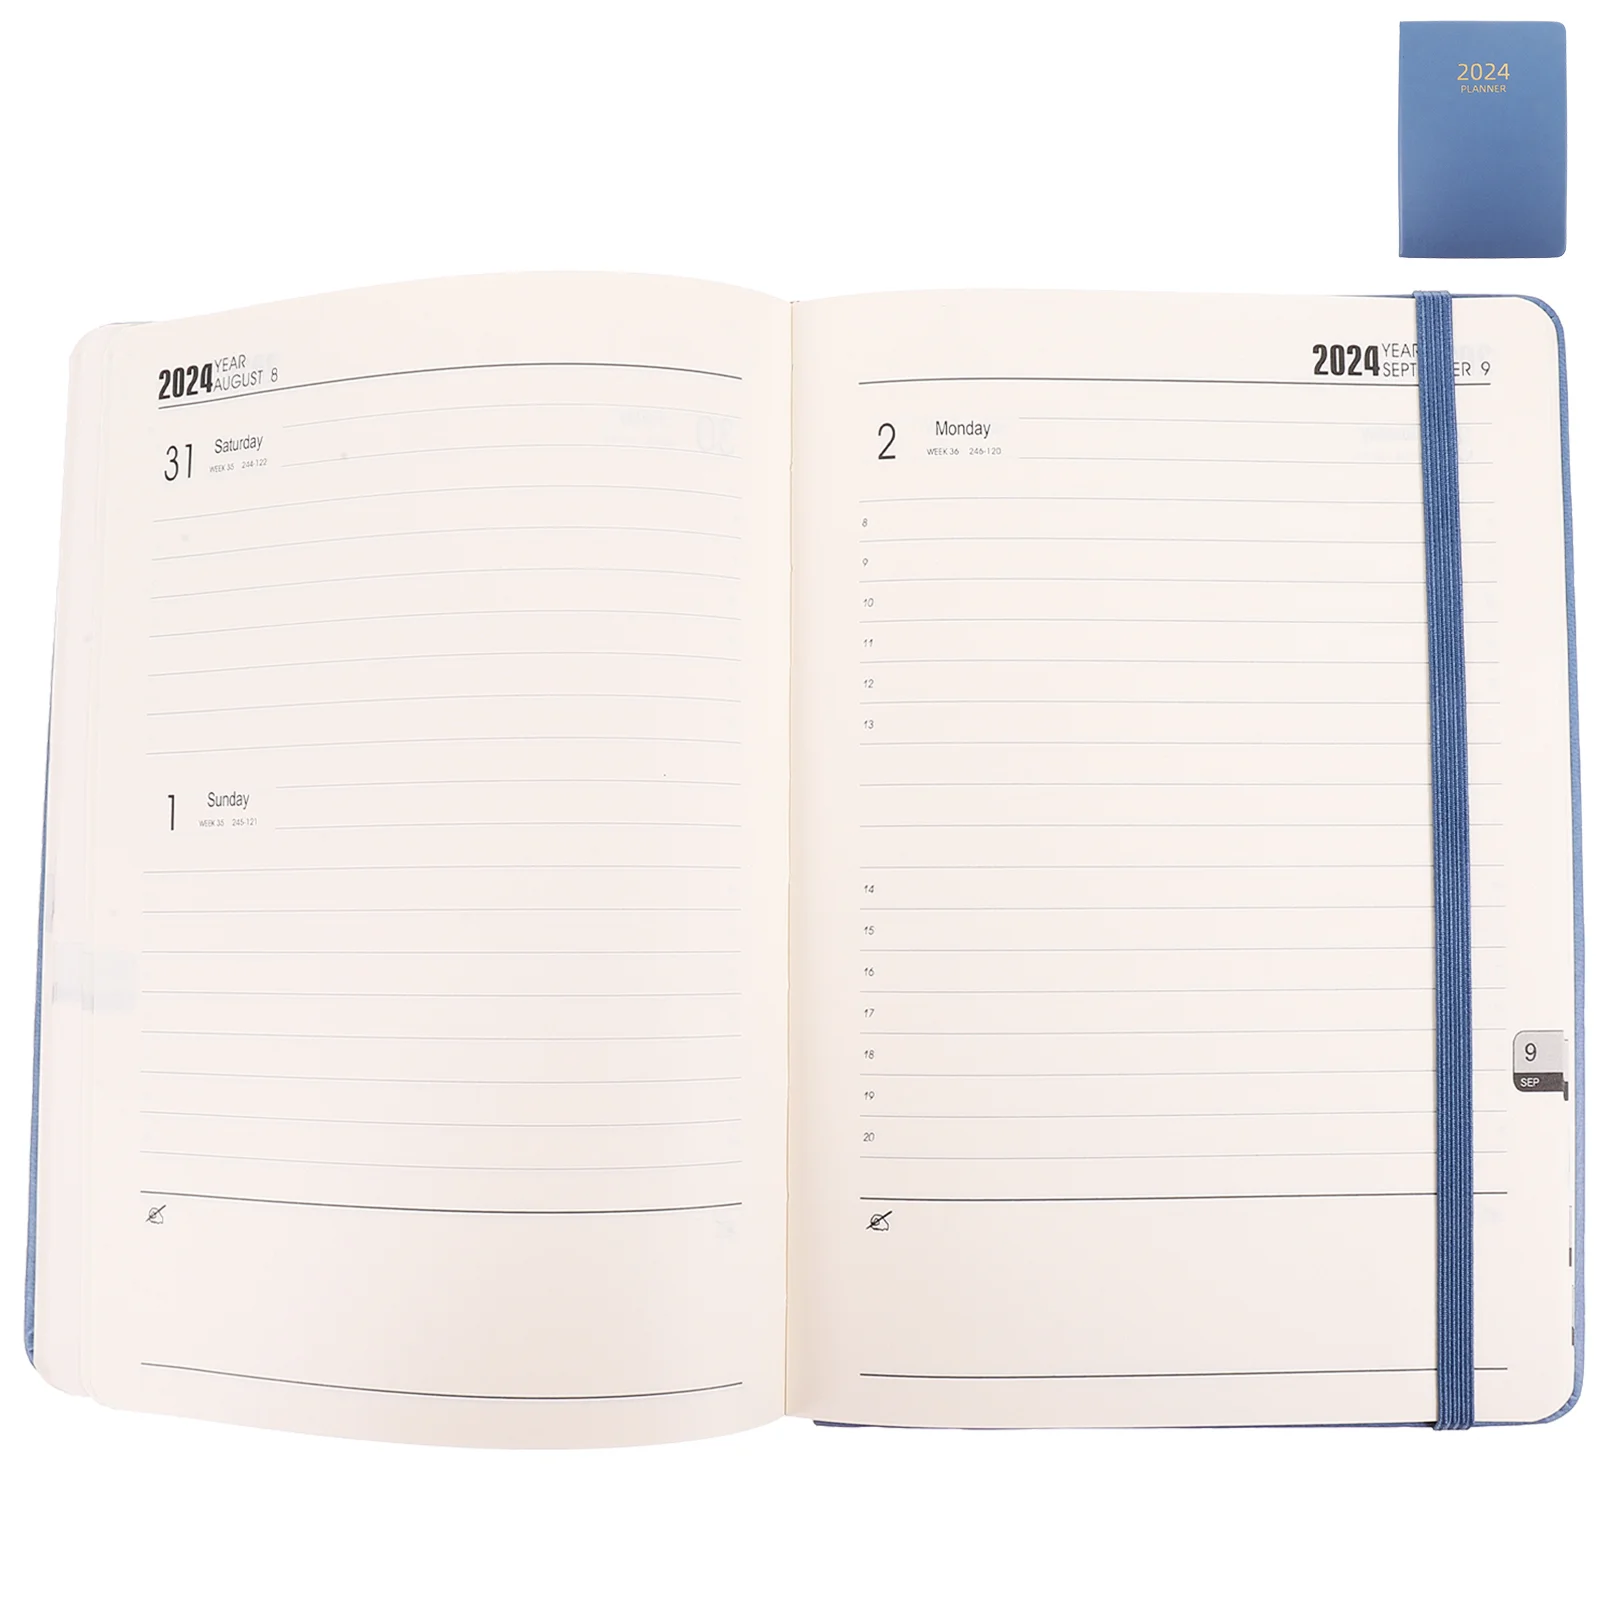 

Date Notepad Notebook Schedule Calendar Do List Plan Efficient The Work Desk Weekly Study Teacher Planners